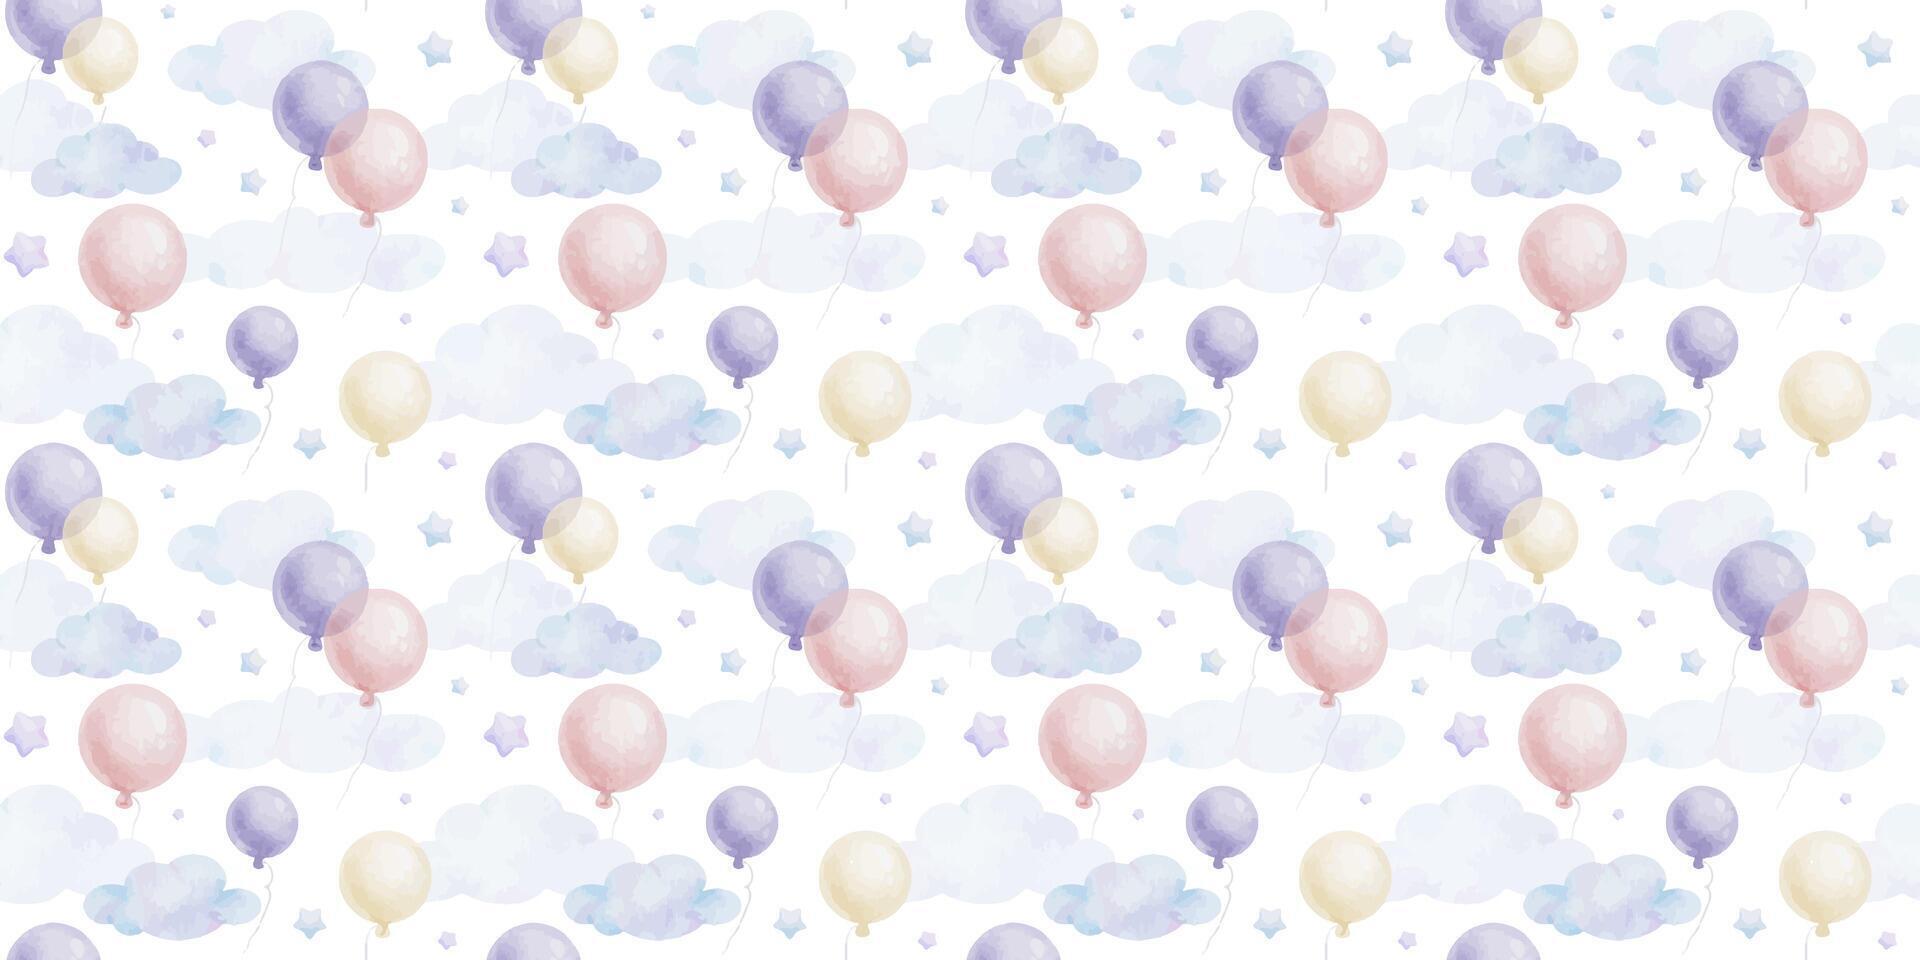 vliegend ronde roze, Purper ballonnen, sterren, wolken. schattig baby's achtergrond. waterverf naadloos patroon van pastel kleur voor kinderen goed, baby's kamer ontwerp, uitnodiging, kinderen textiel, kleding. vector